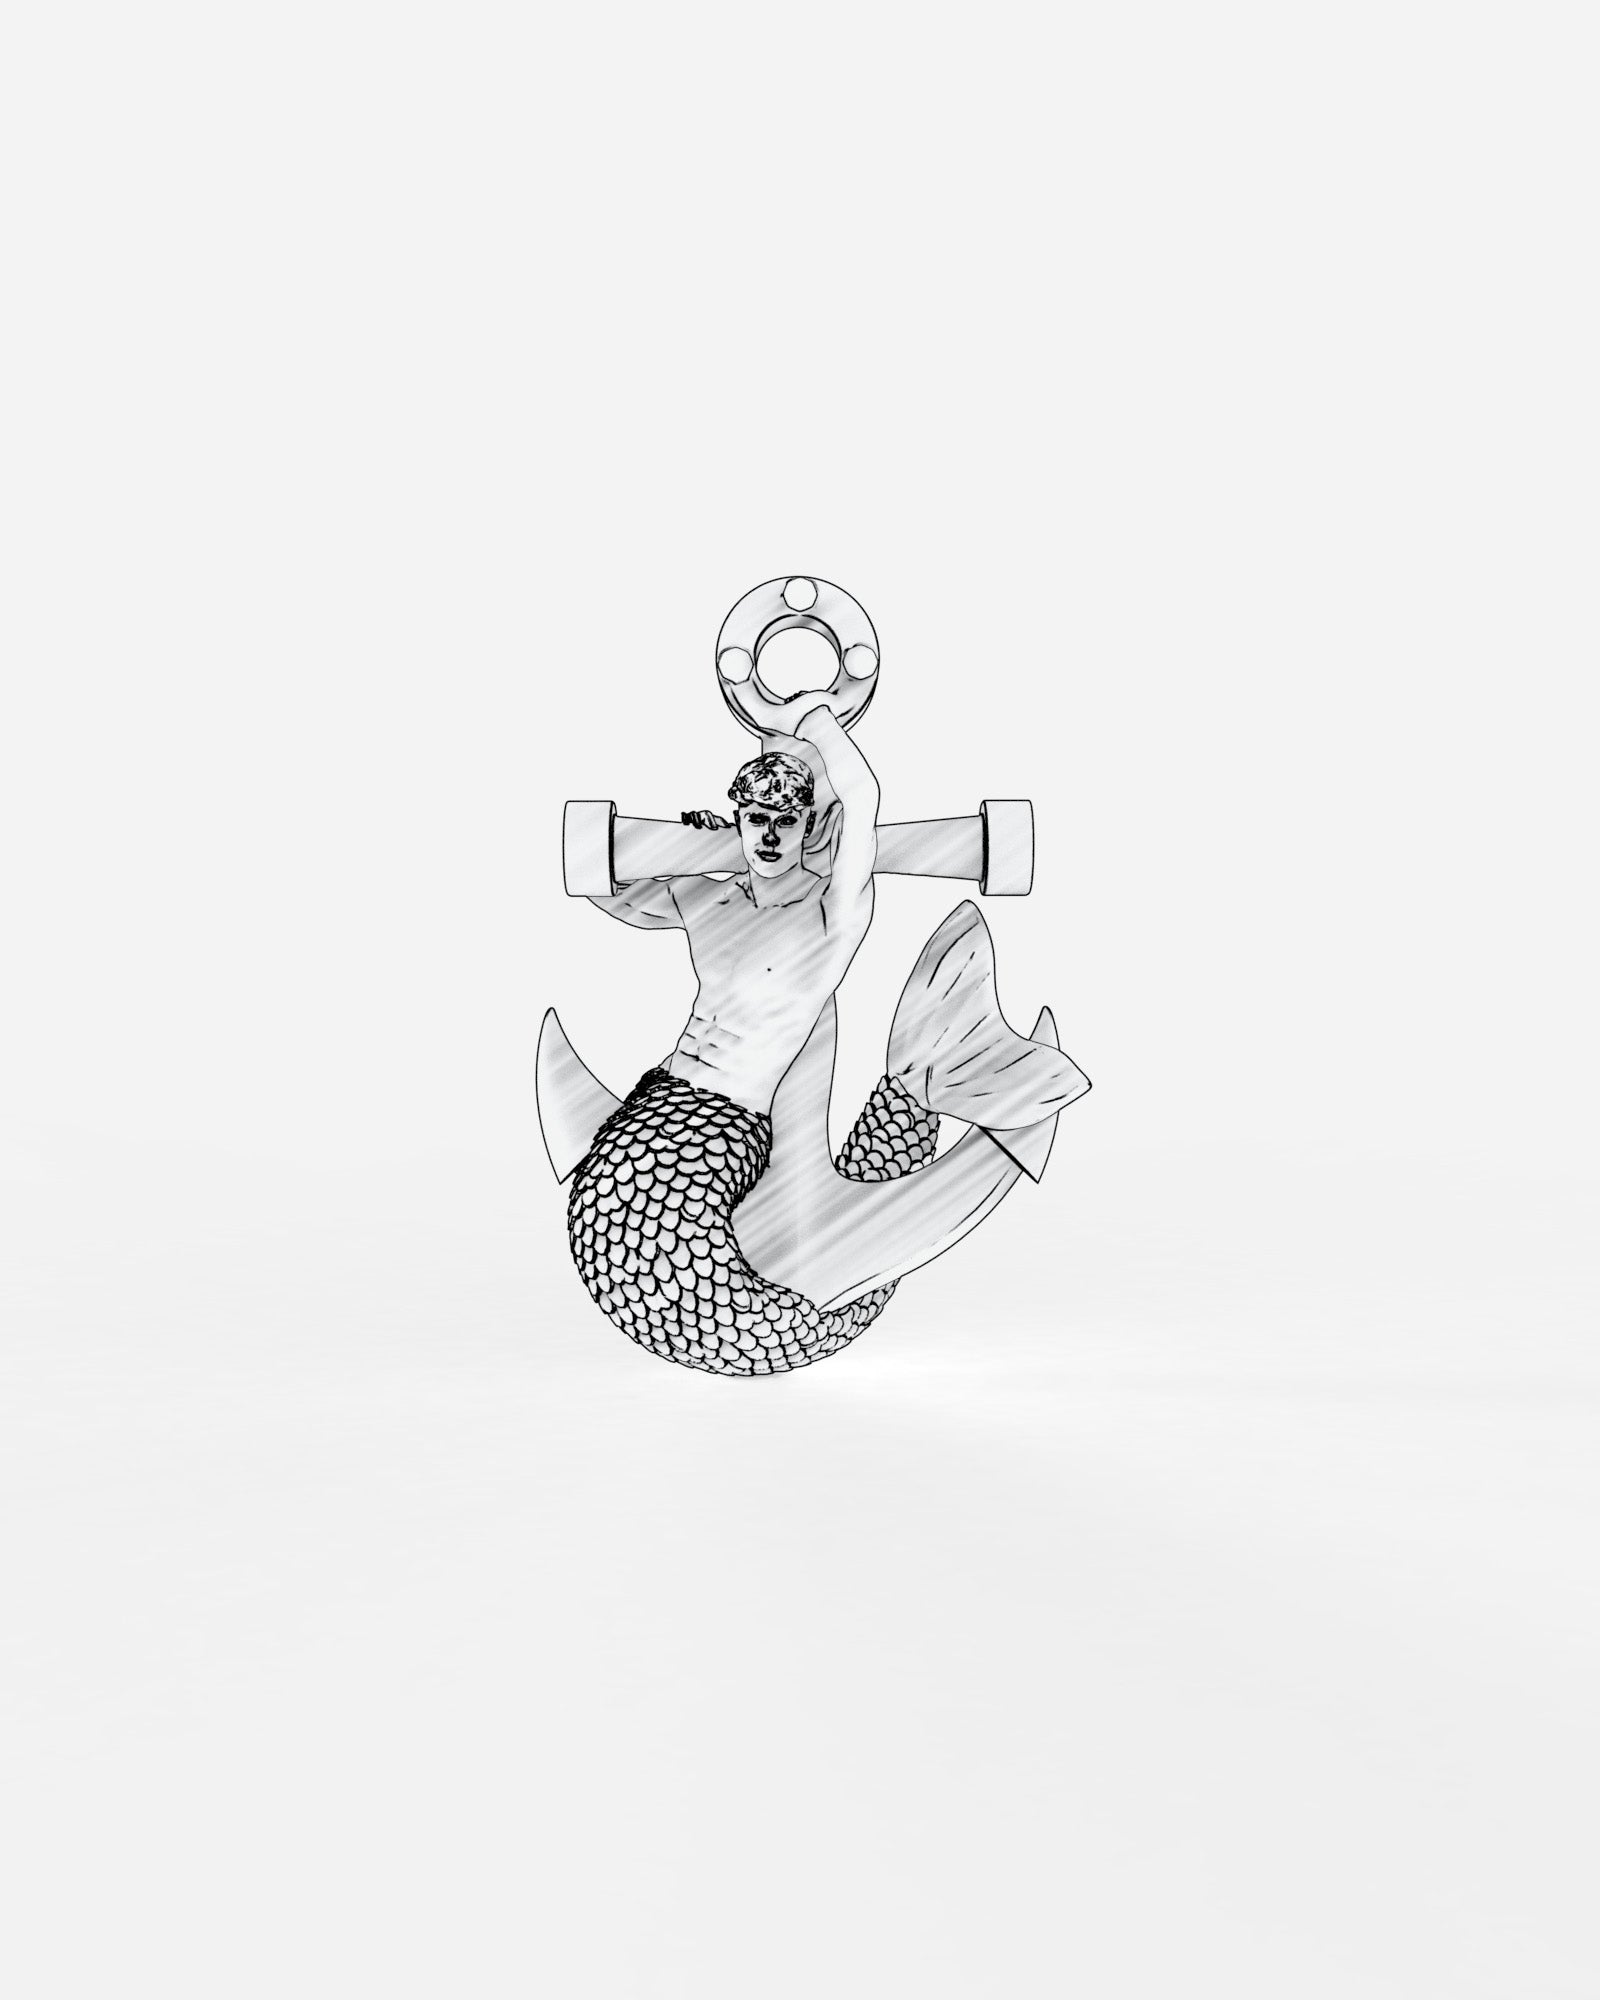 Merman & Anchor Single Earring in Sterling Silver by Wilson Grant